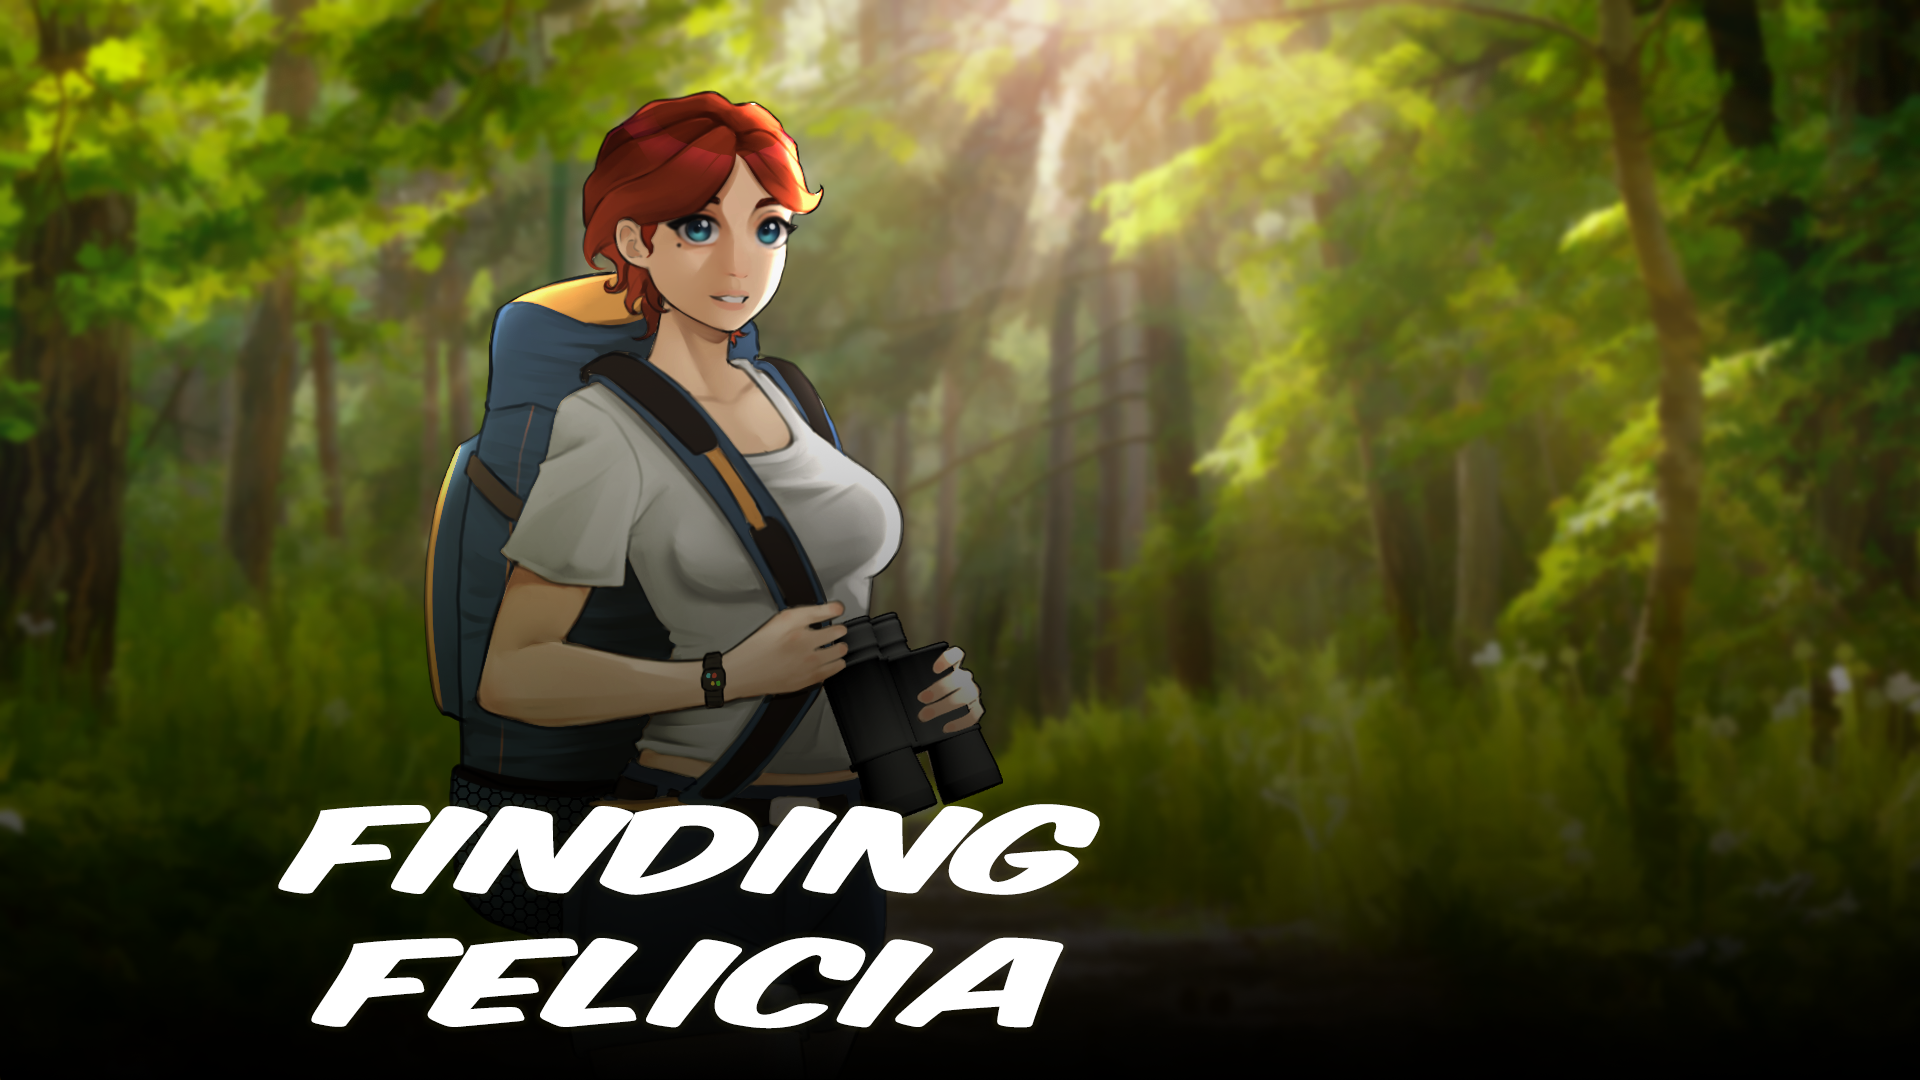 Finding Felicia Happy Edition